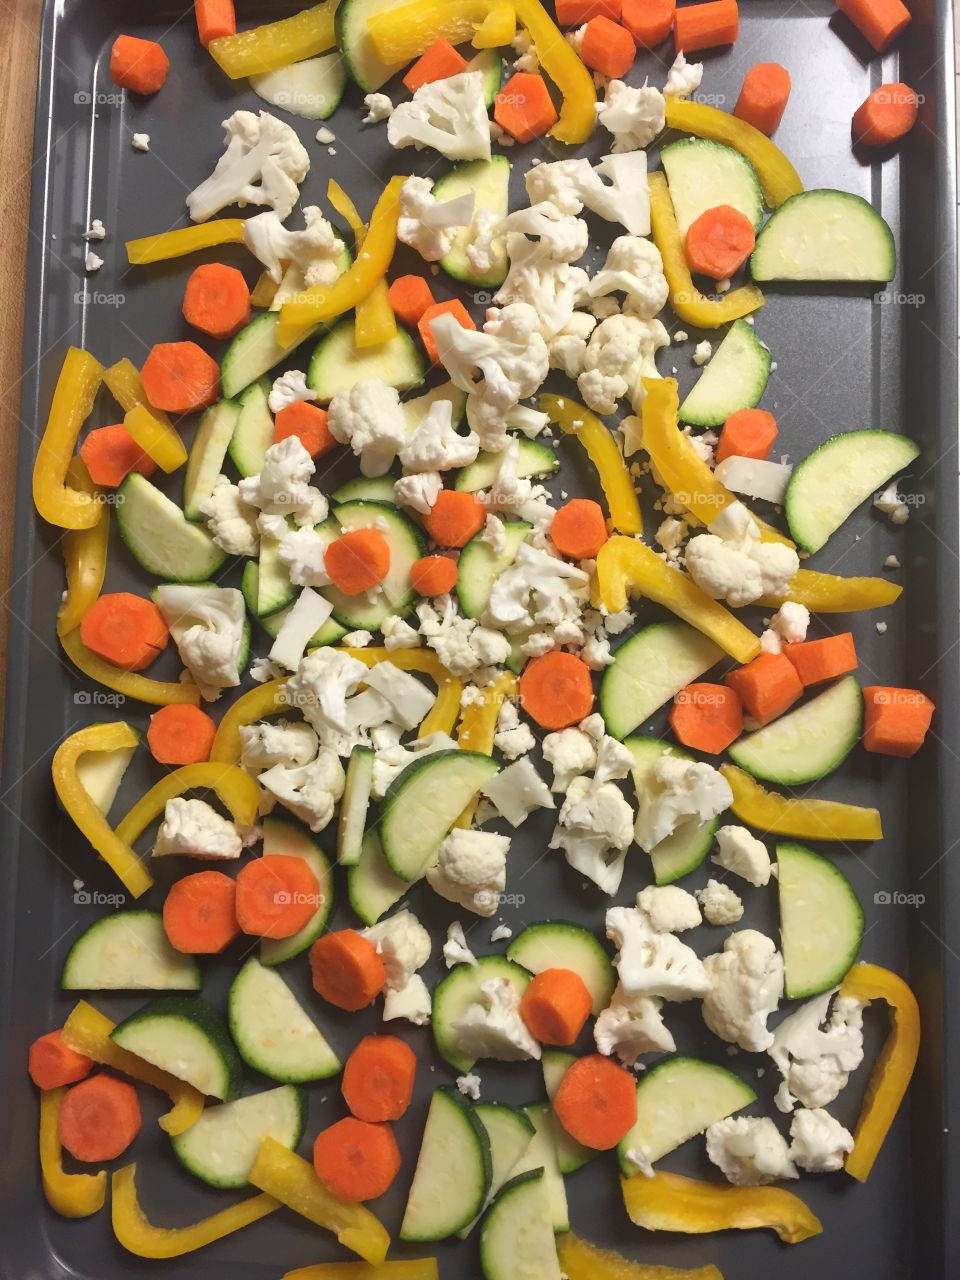 Full frame of chopped vegetables